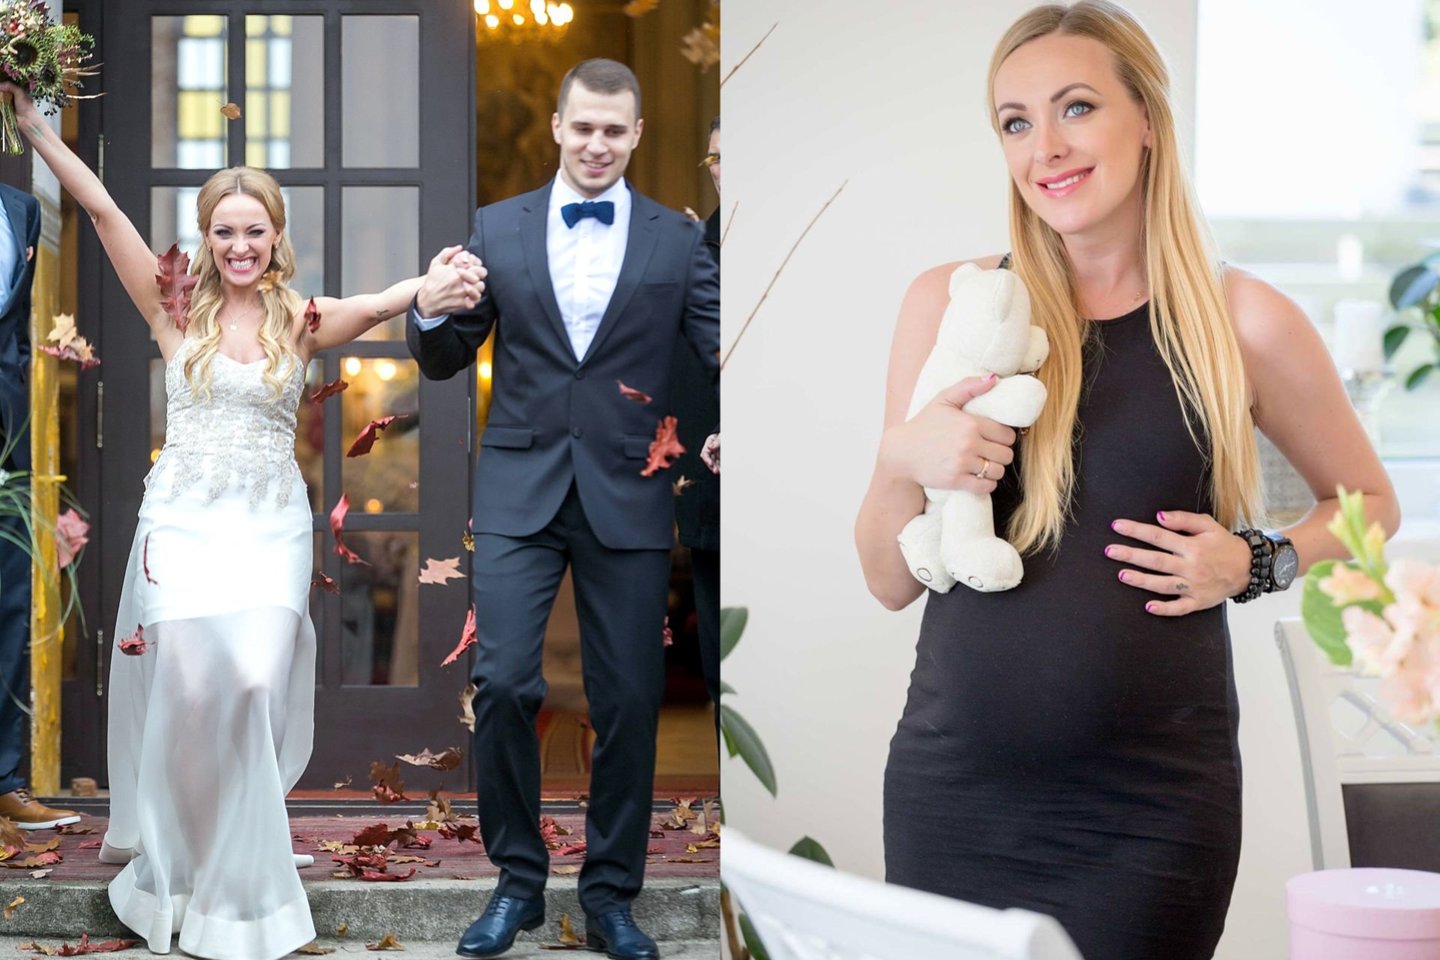  B.Skurstenė ir M.Serdiukas susituokė 2014-ųjų spalio mėnesį. <br> T.Bauro ir Elly Jurrelly nuotr.